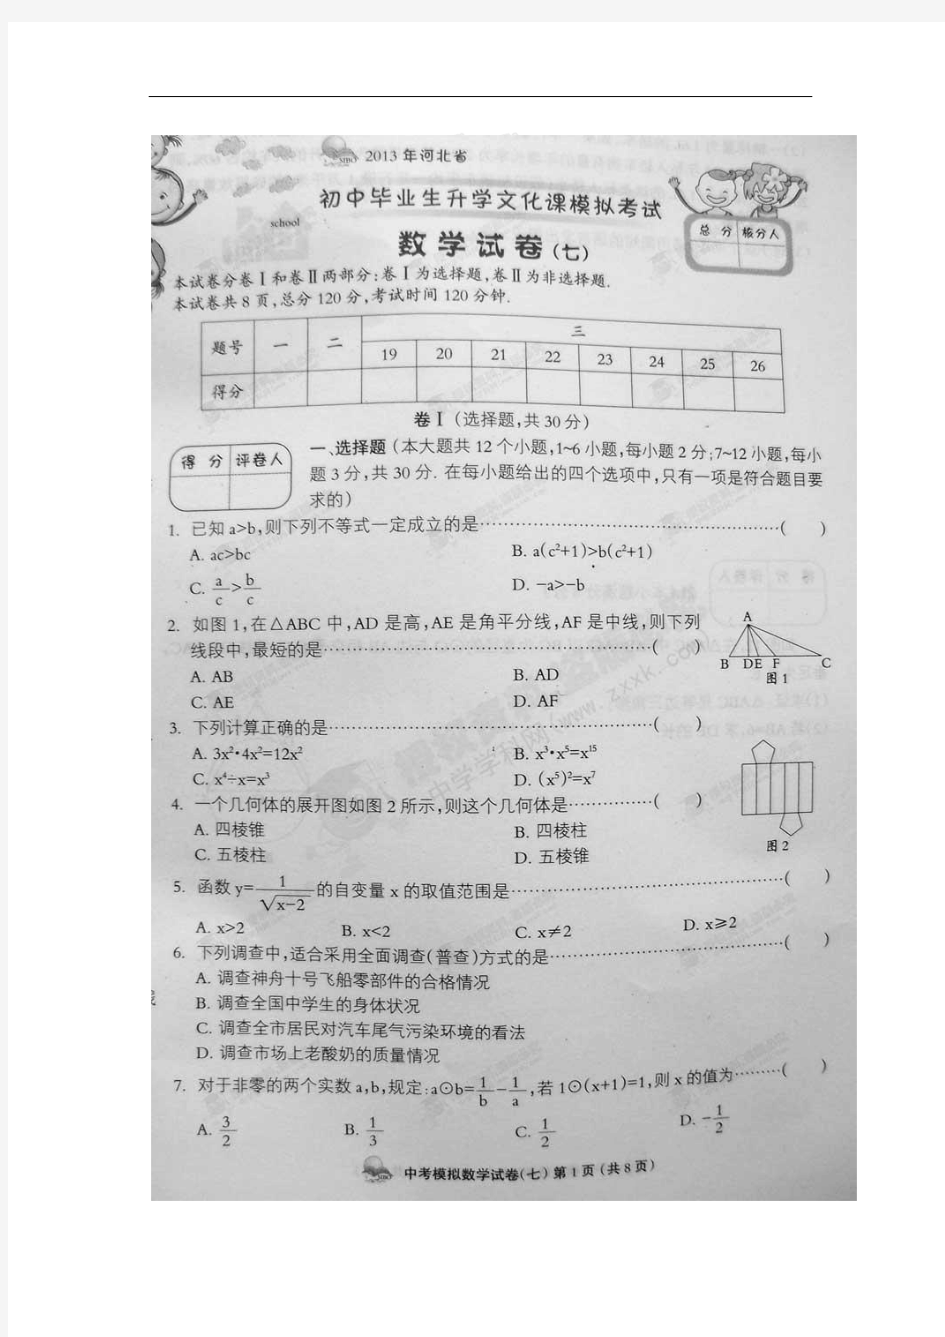 2013年河北省初中毕业生升学文化课模拟(七)考试数学试题(扫描版)